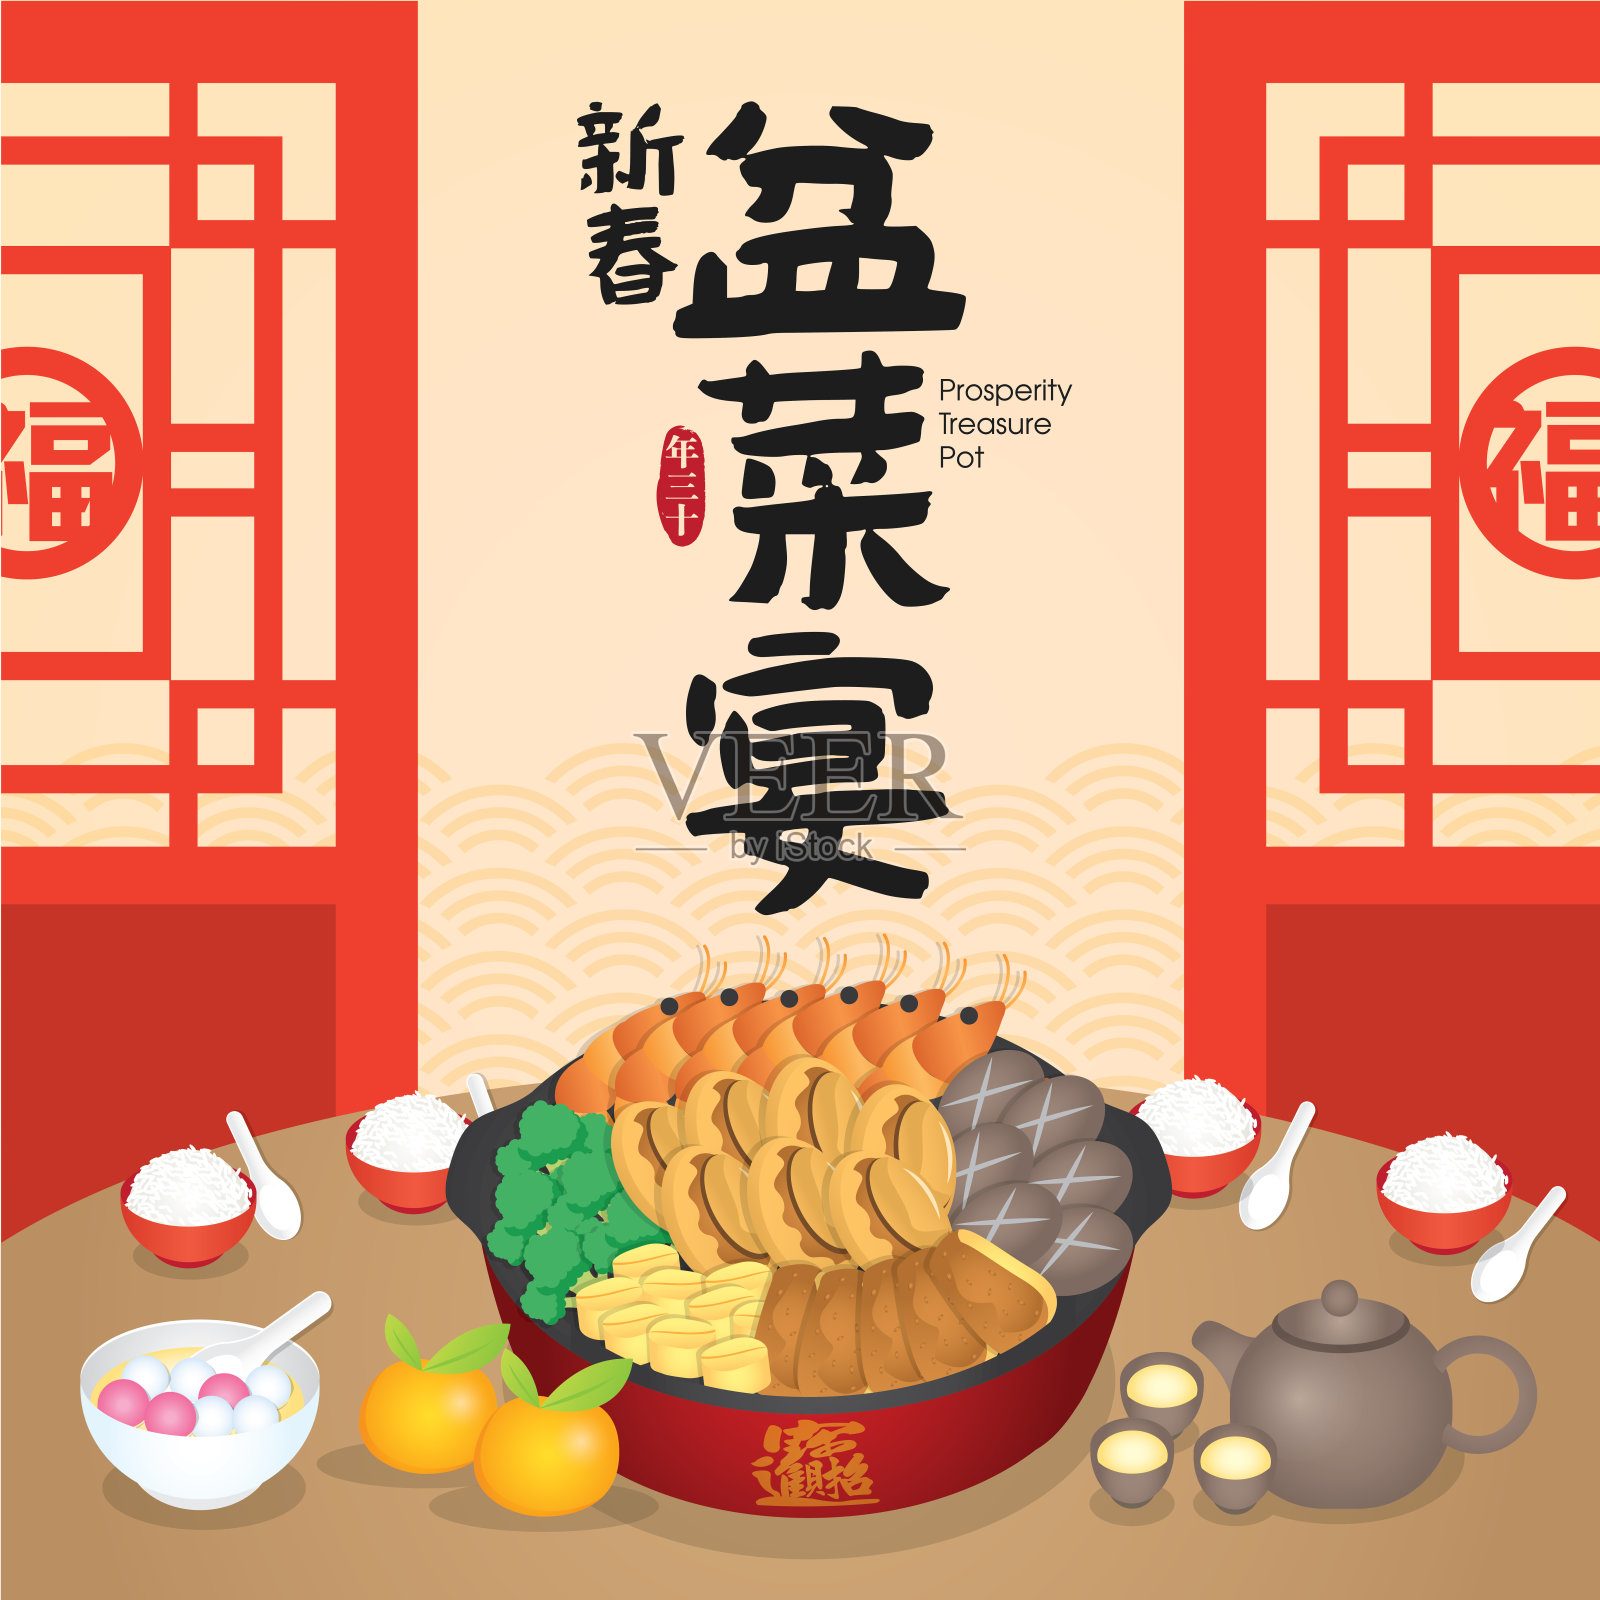 盆菜是传统的粤菜，由多层不同的食材组成。中国新年菜。(翻译:繁荣宝罐)设计模板素材